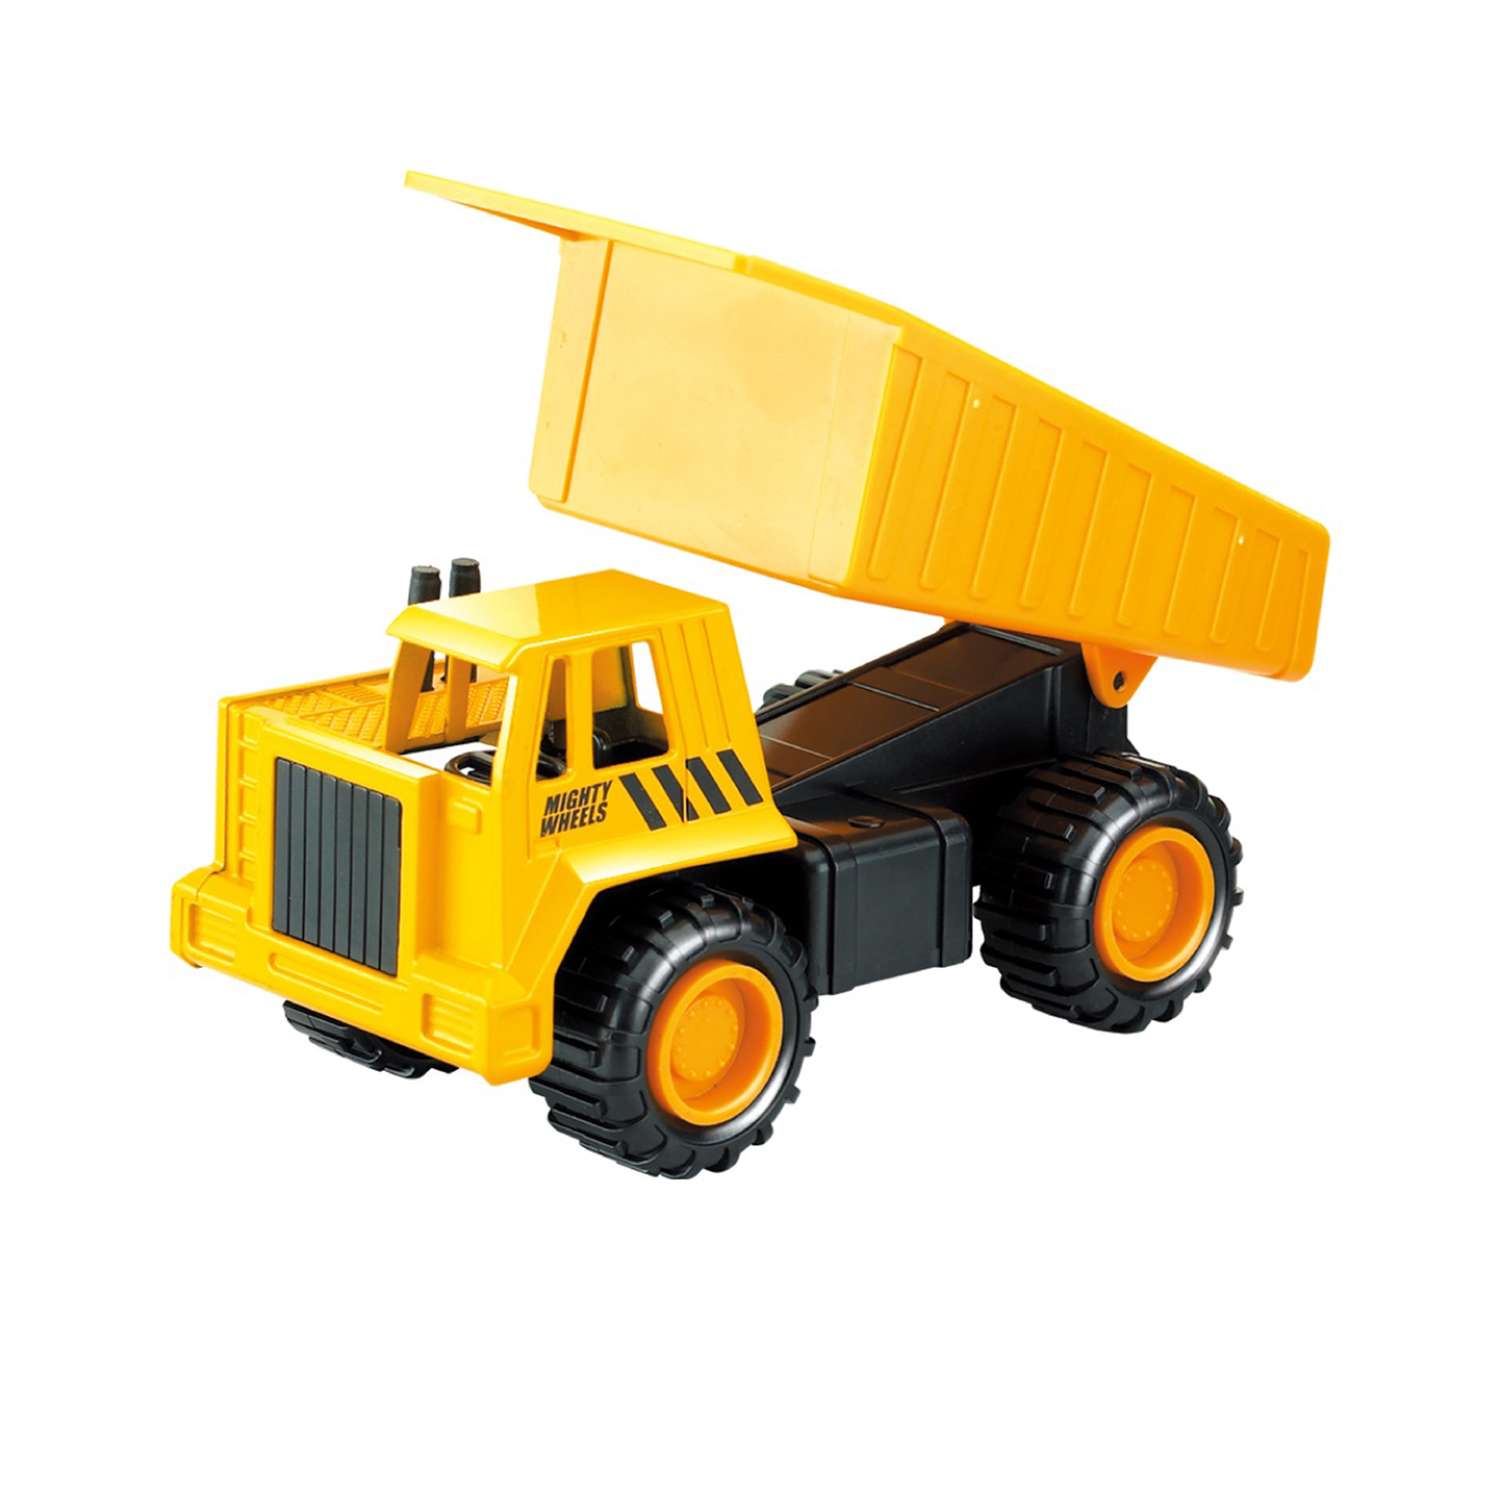 Игровой набор Пламенный мотор грузовик и фигурка строителя 870722 - фото 2